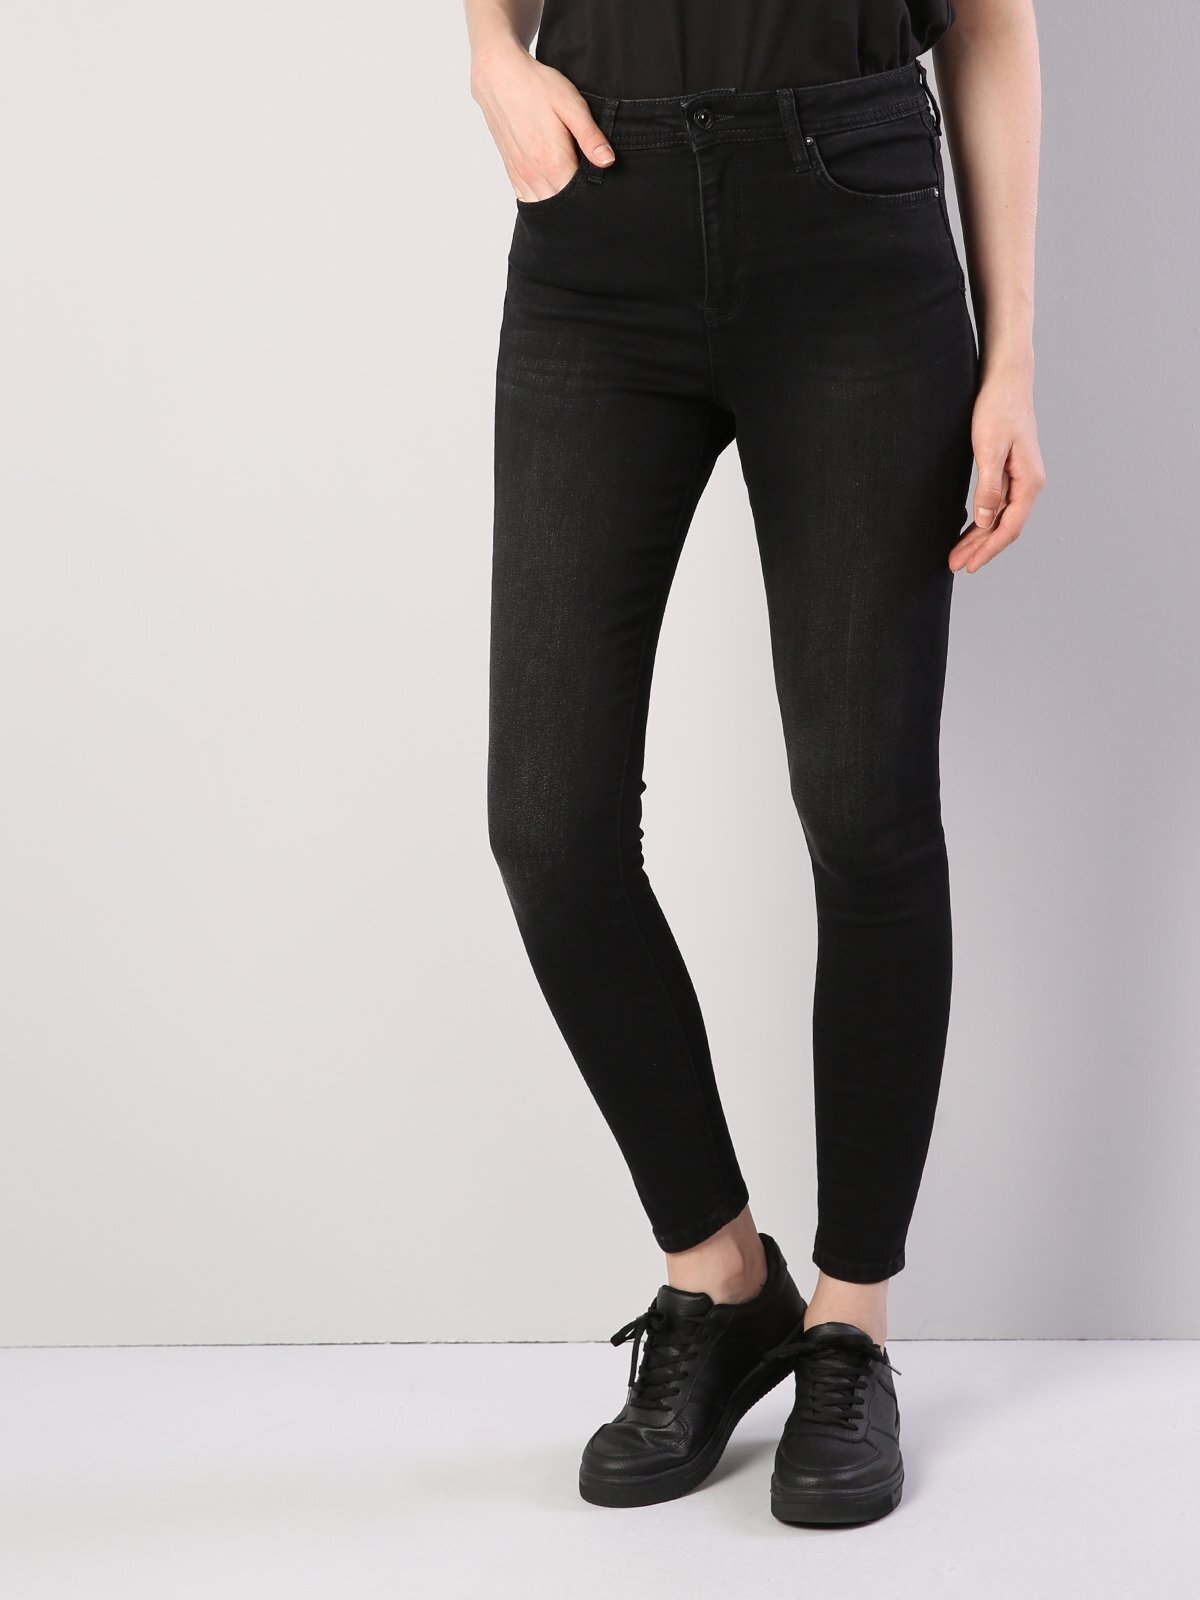 Colins 760 Dıana Yüksek Bel Dar Paça Super Slim Fit Siyah Kadın Jean Pantolon. 1